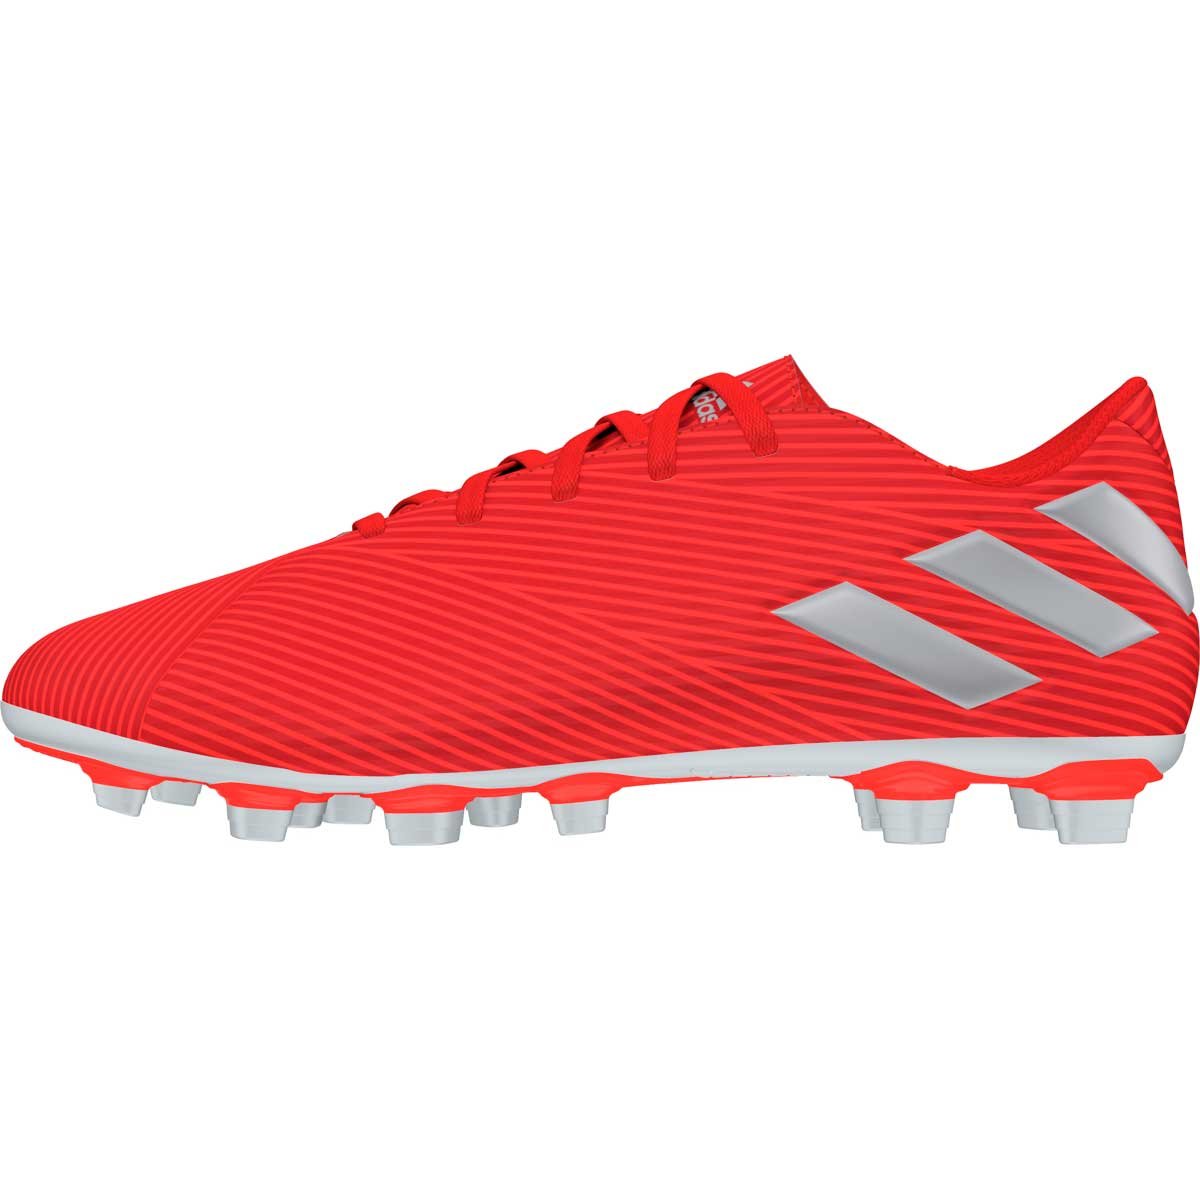 Calzado Soccer Nemeziz 19.4 Fxg Solred  Adidas - Caballero